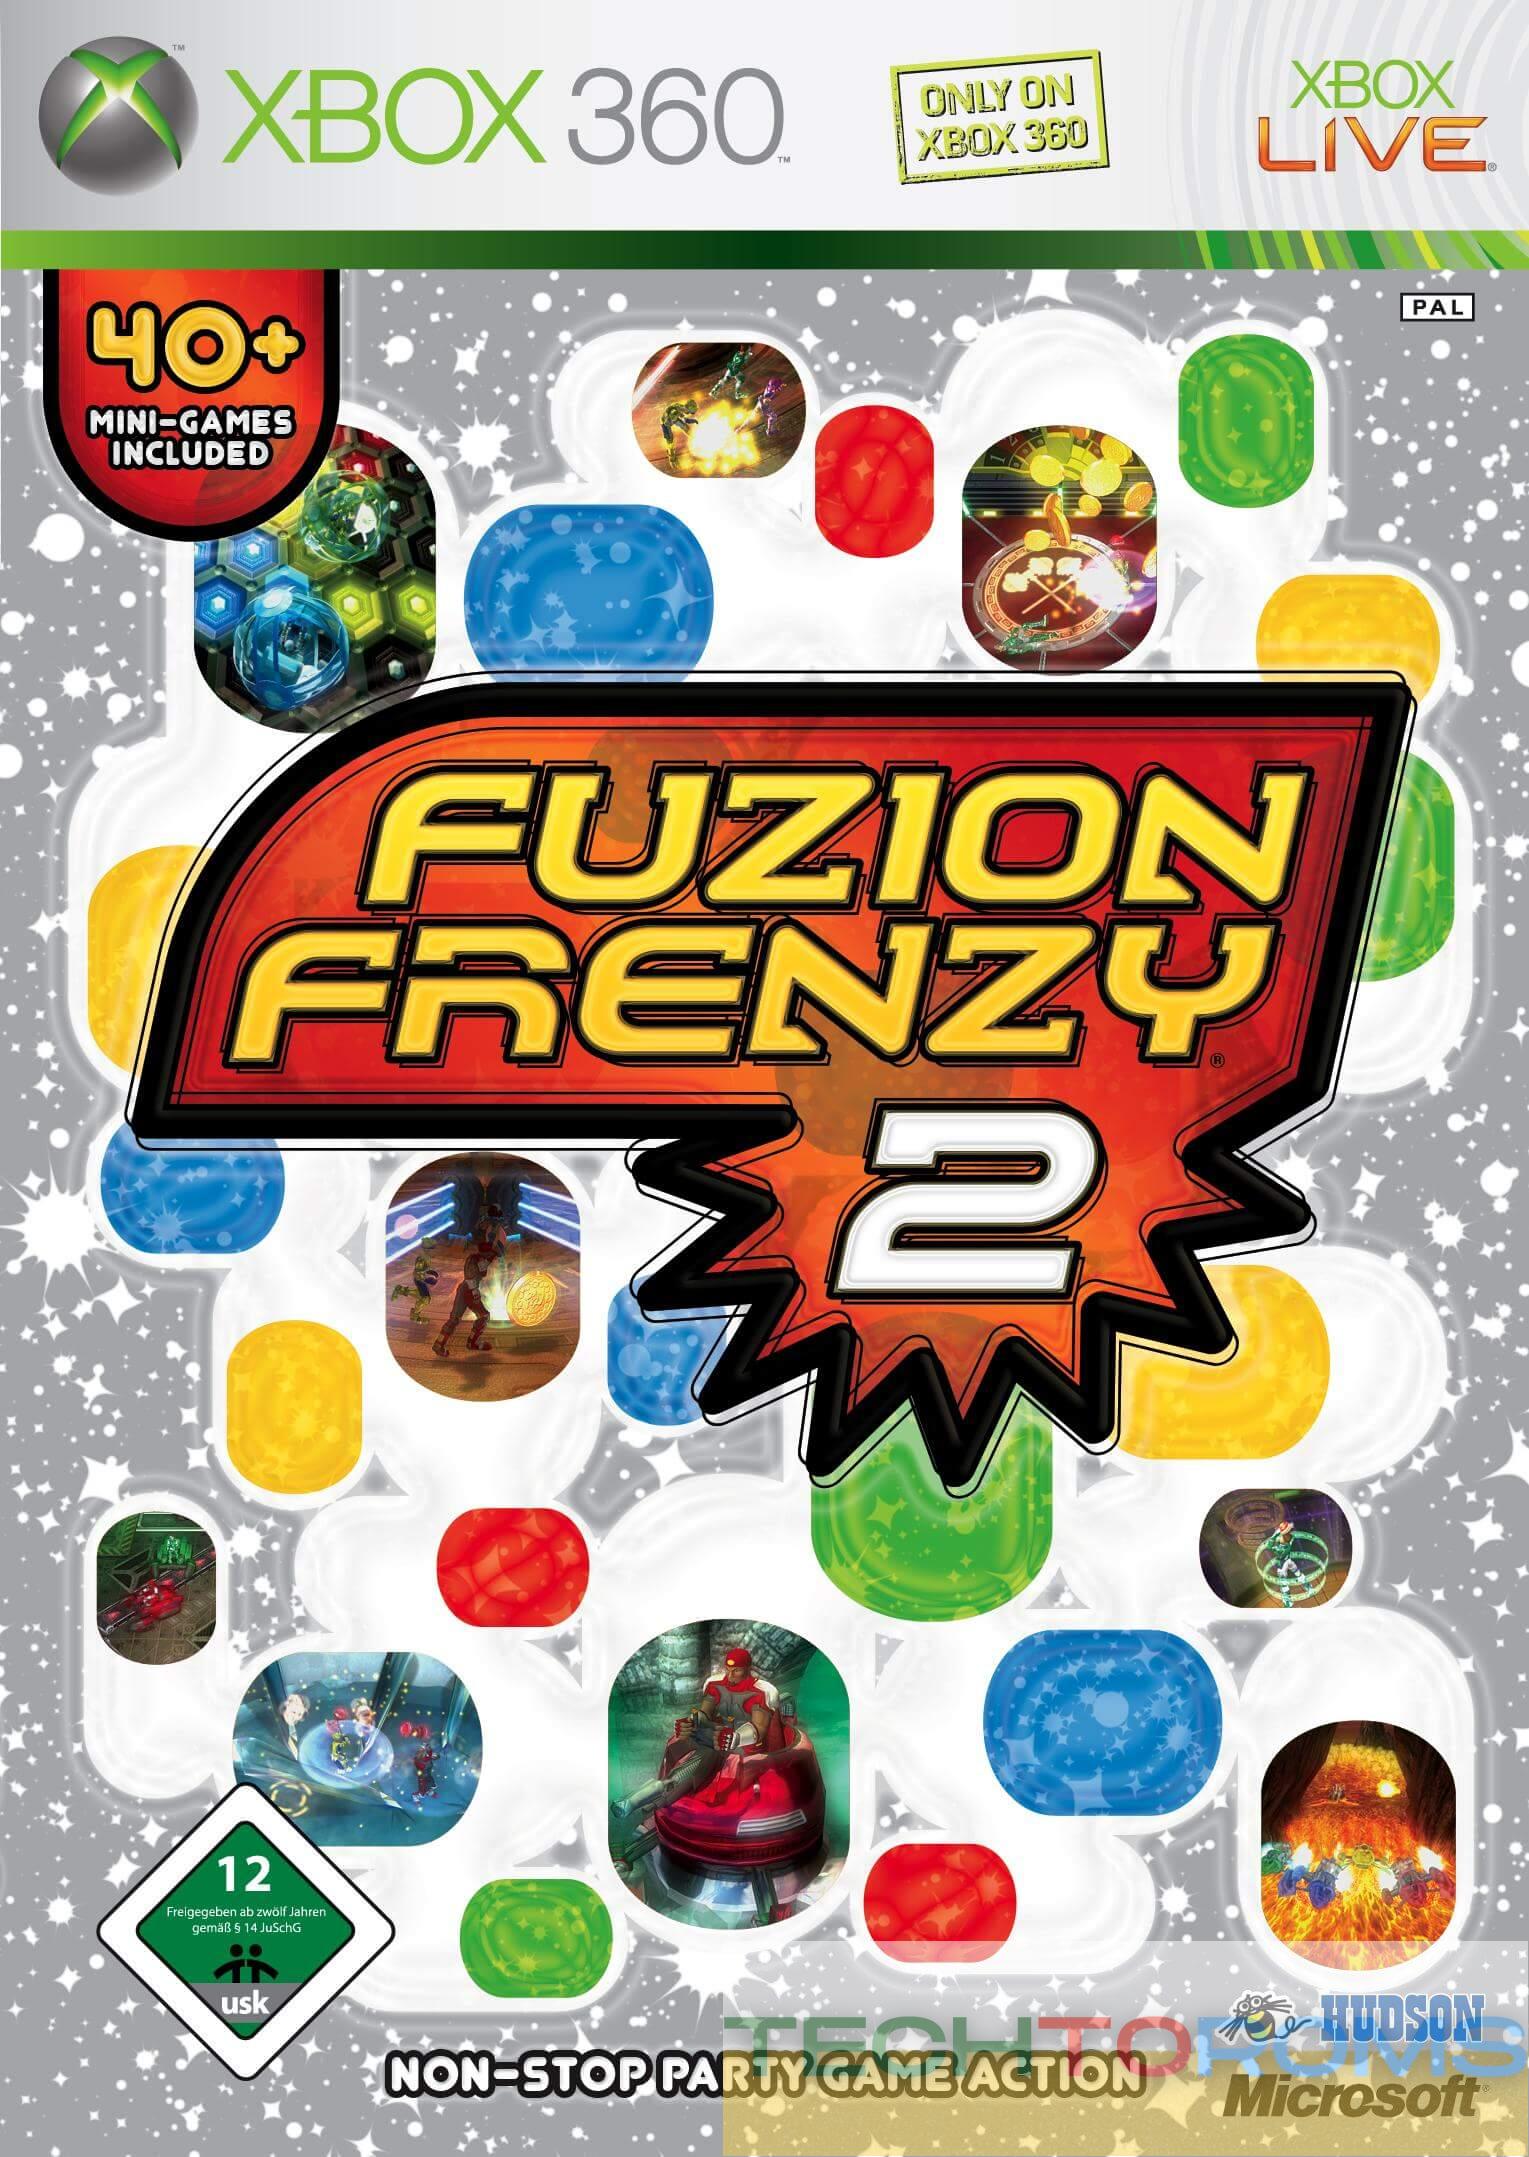 Fuzion-frenzy 2